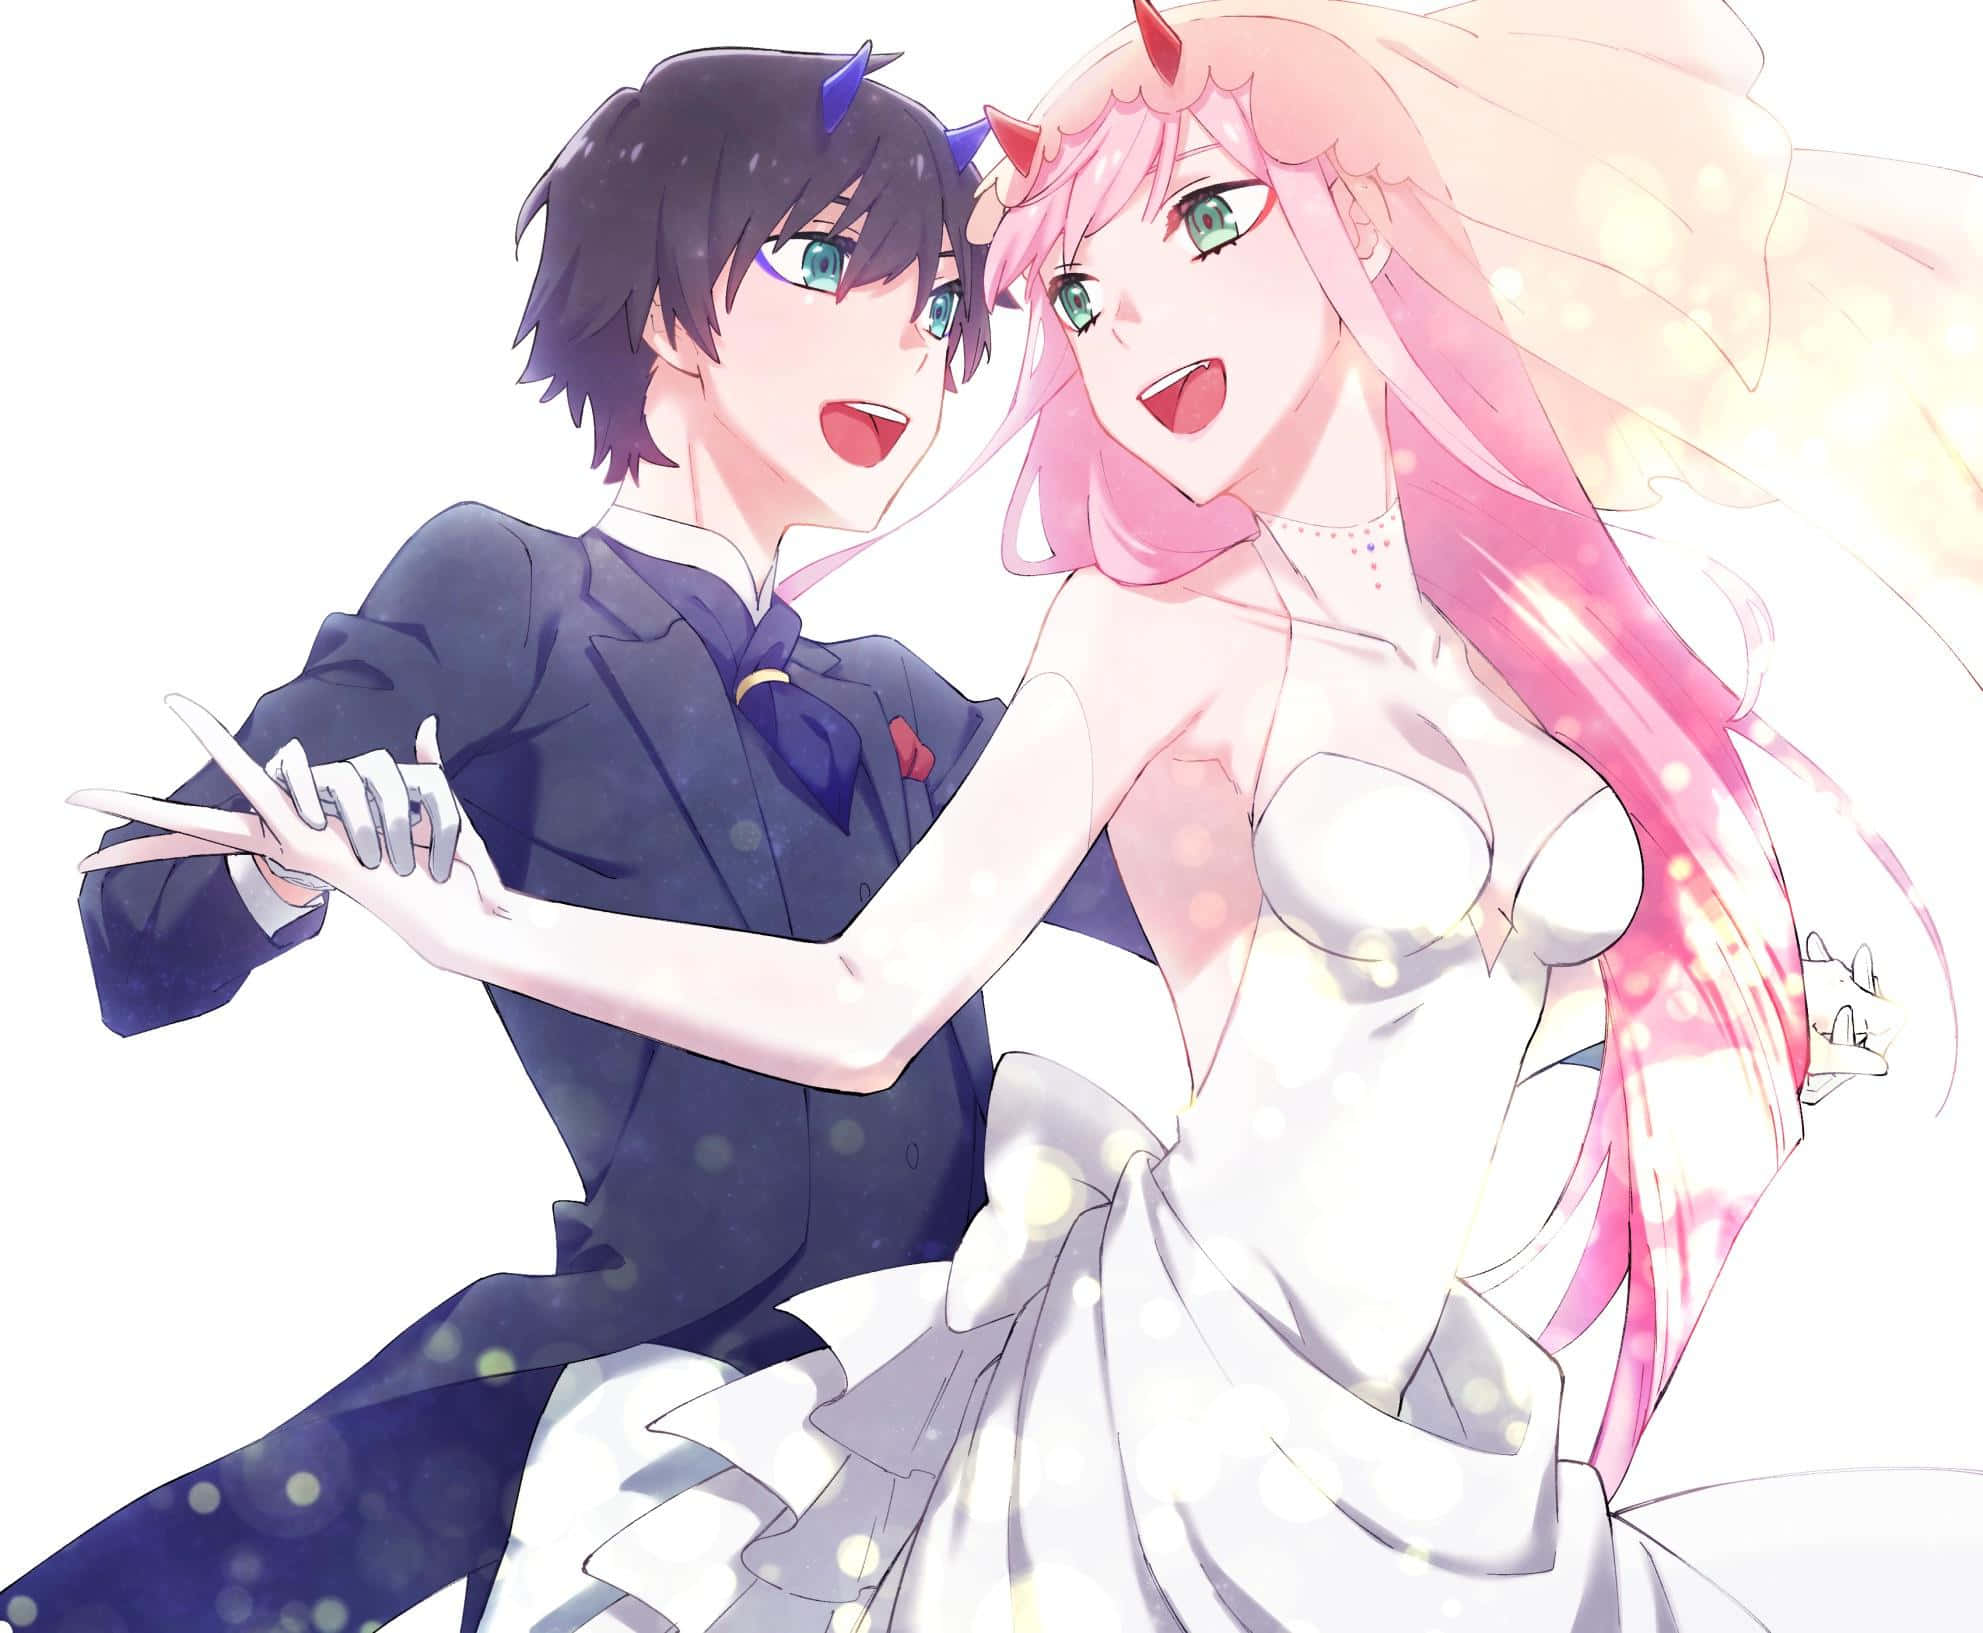 Imagensde Anime De Marido E Esposa Dançando.